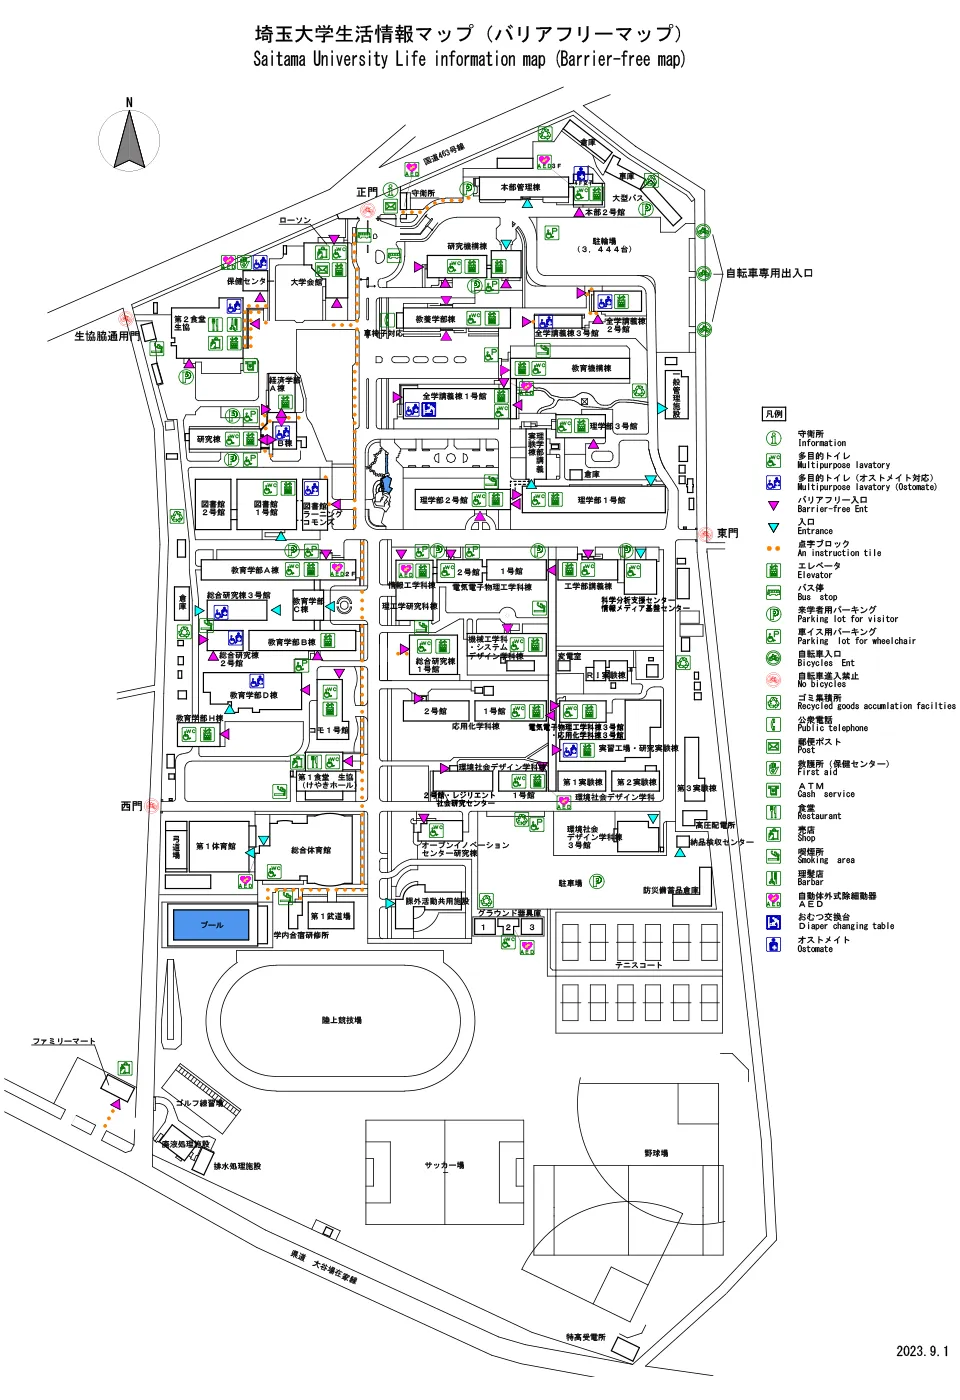 埼玉大学バリアフリーマップ